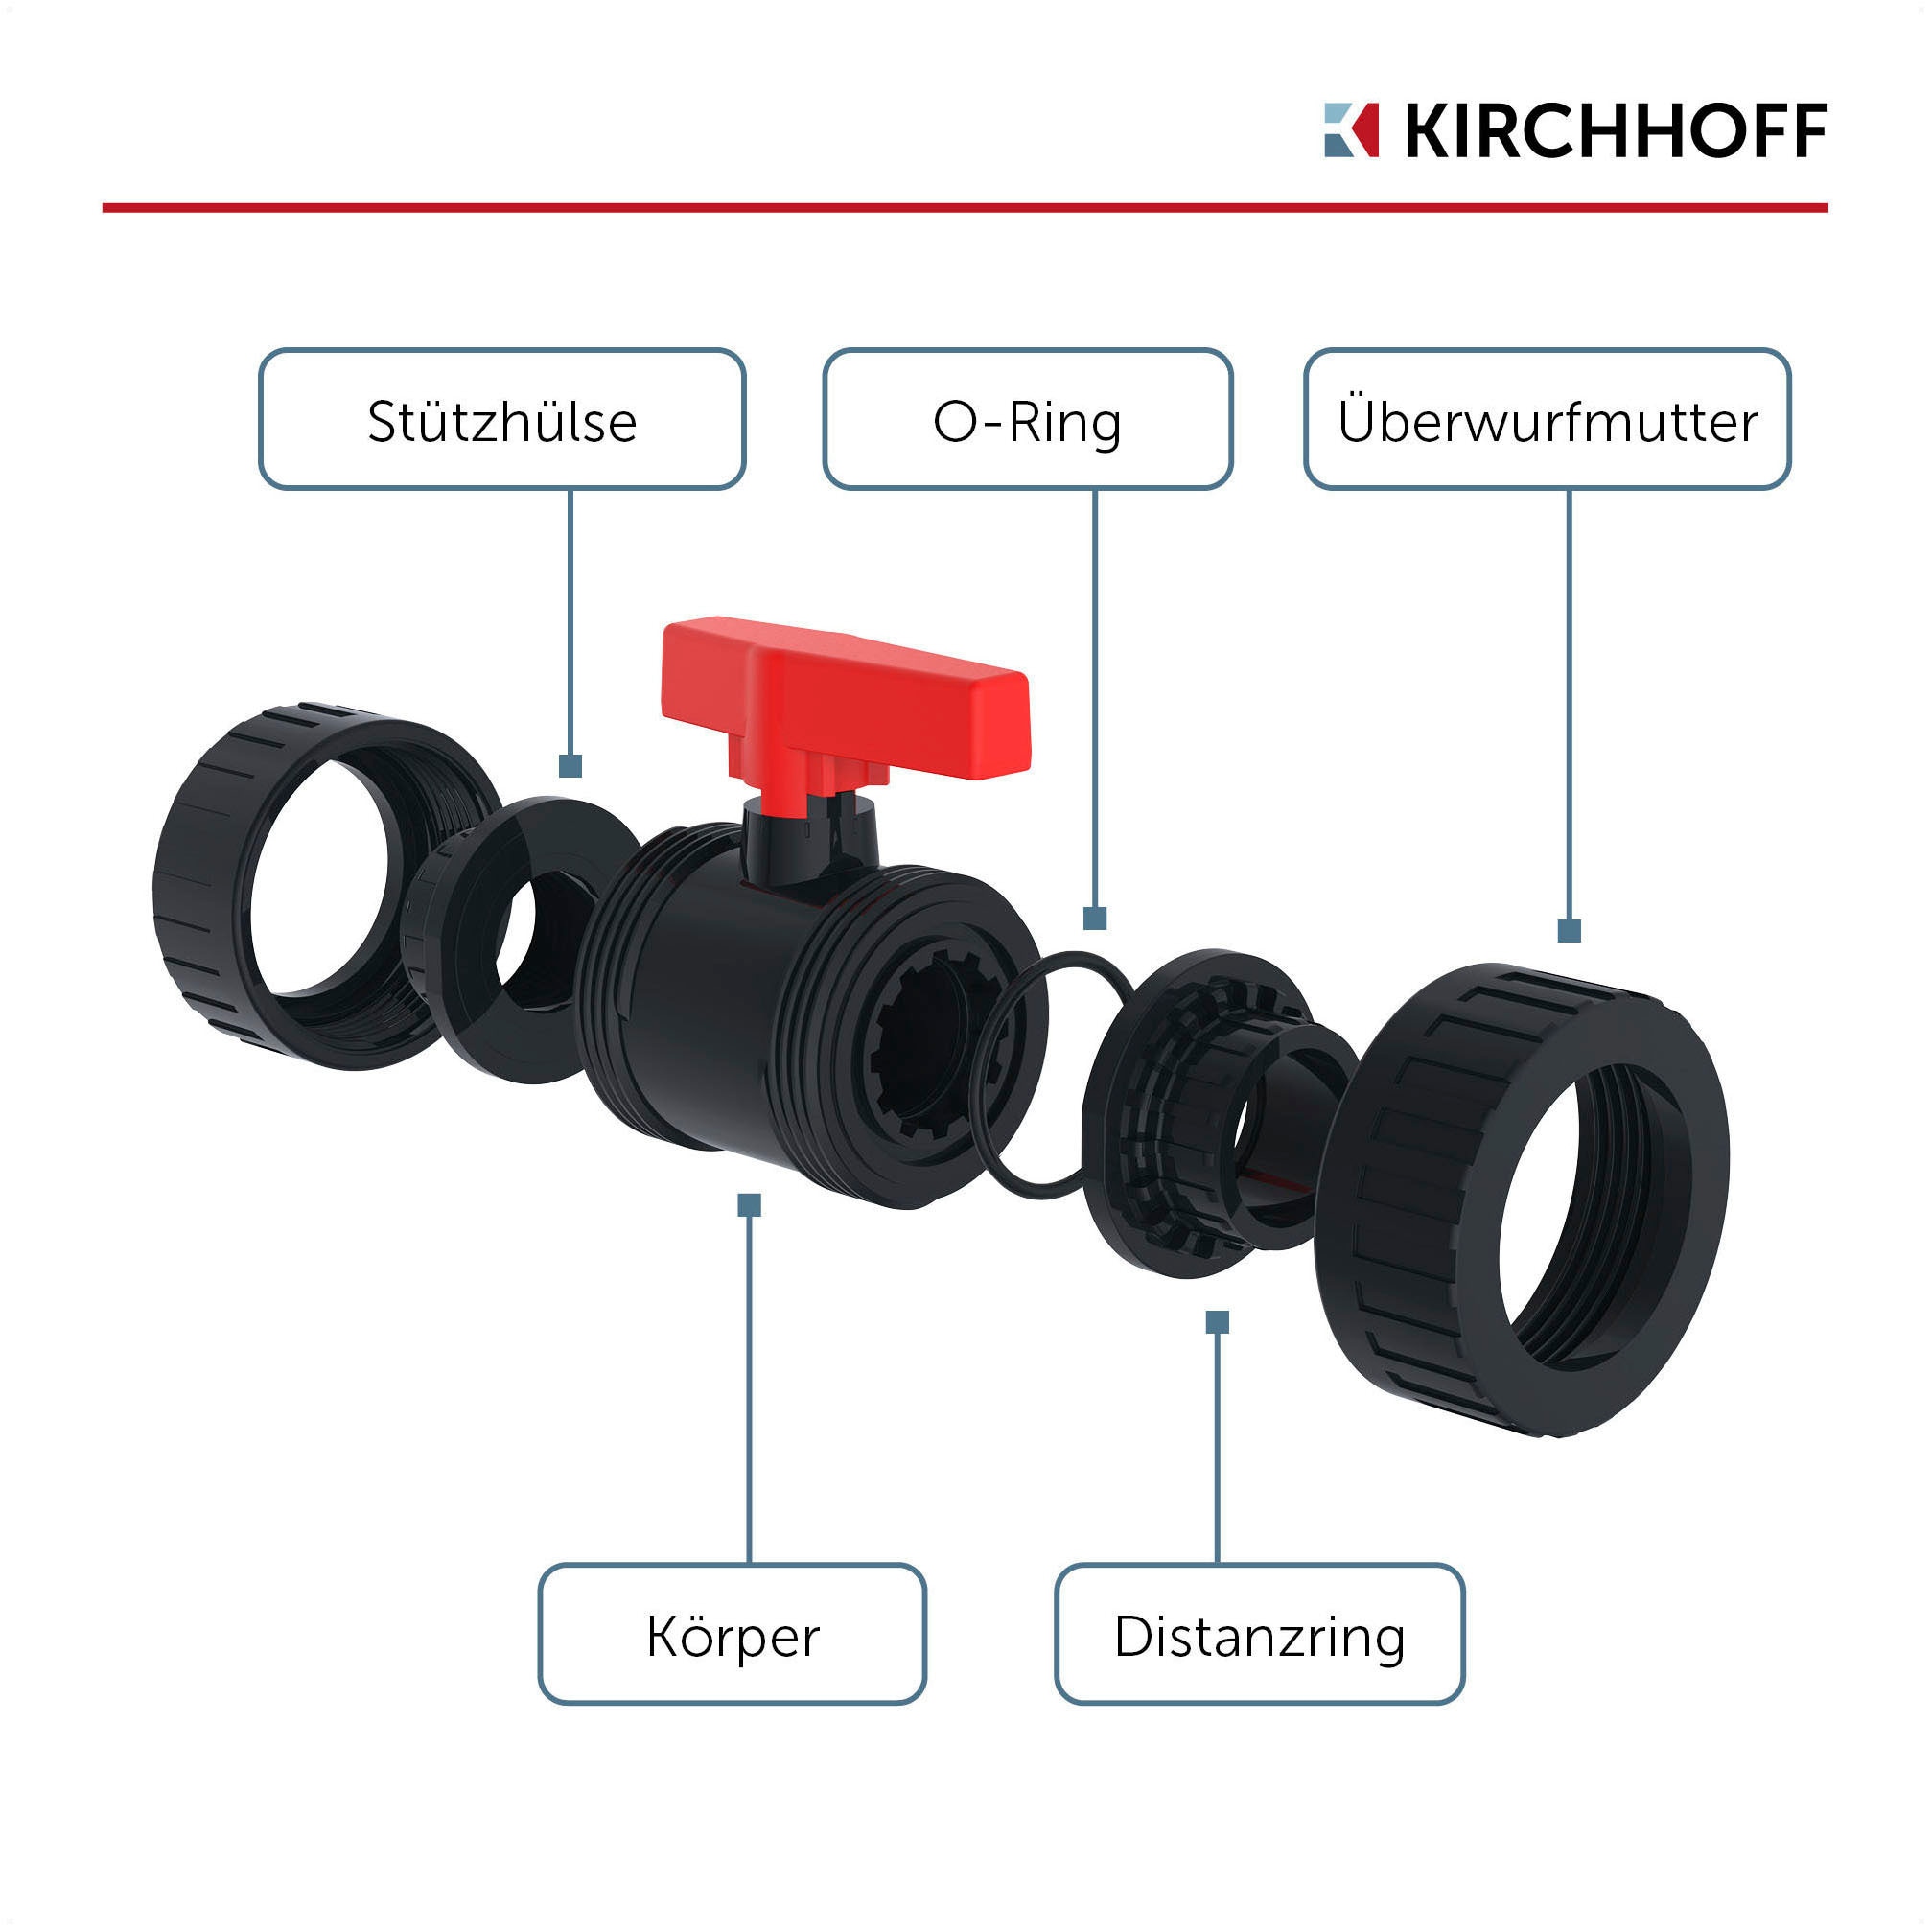 Kirchhoff Kugelhahn »PVC-Druckrohr für Pool, Teich, PN 12,5«, besonders beständig